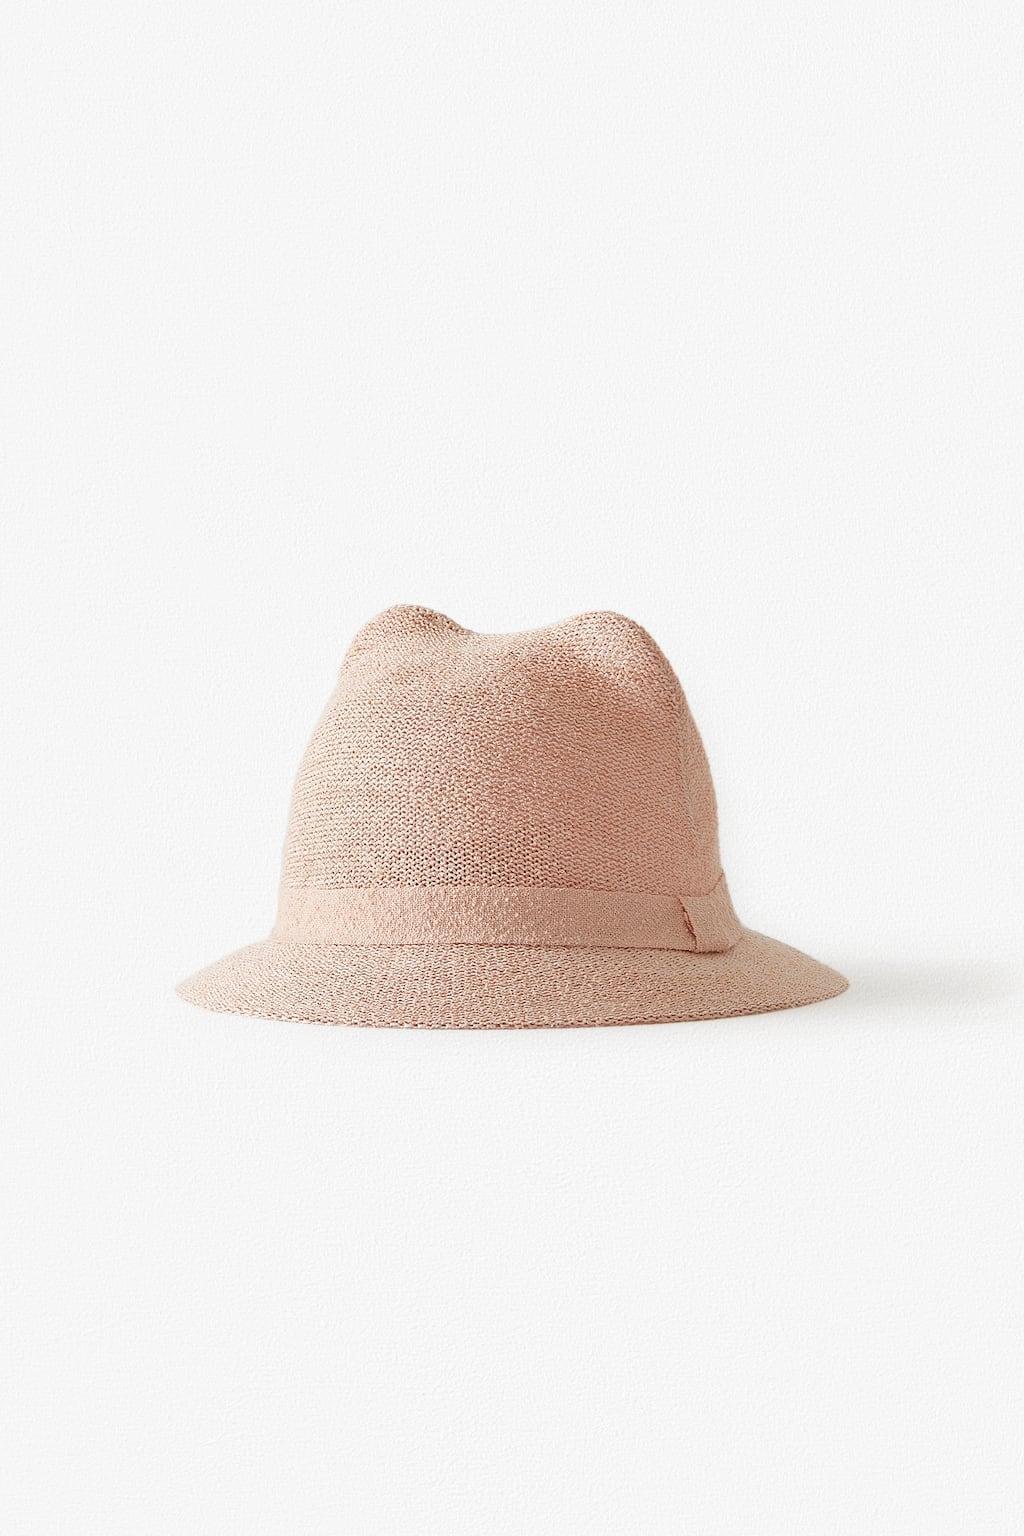 Отзыв на Дождь шапка С Уши из Интернет-Магазина Zara